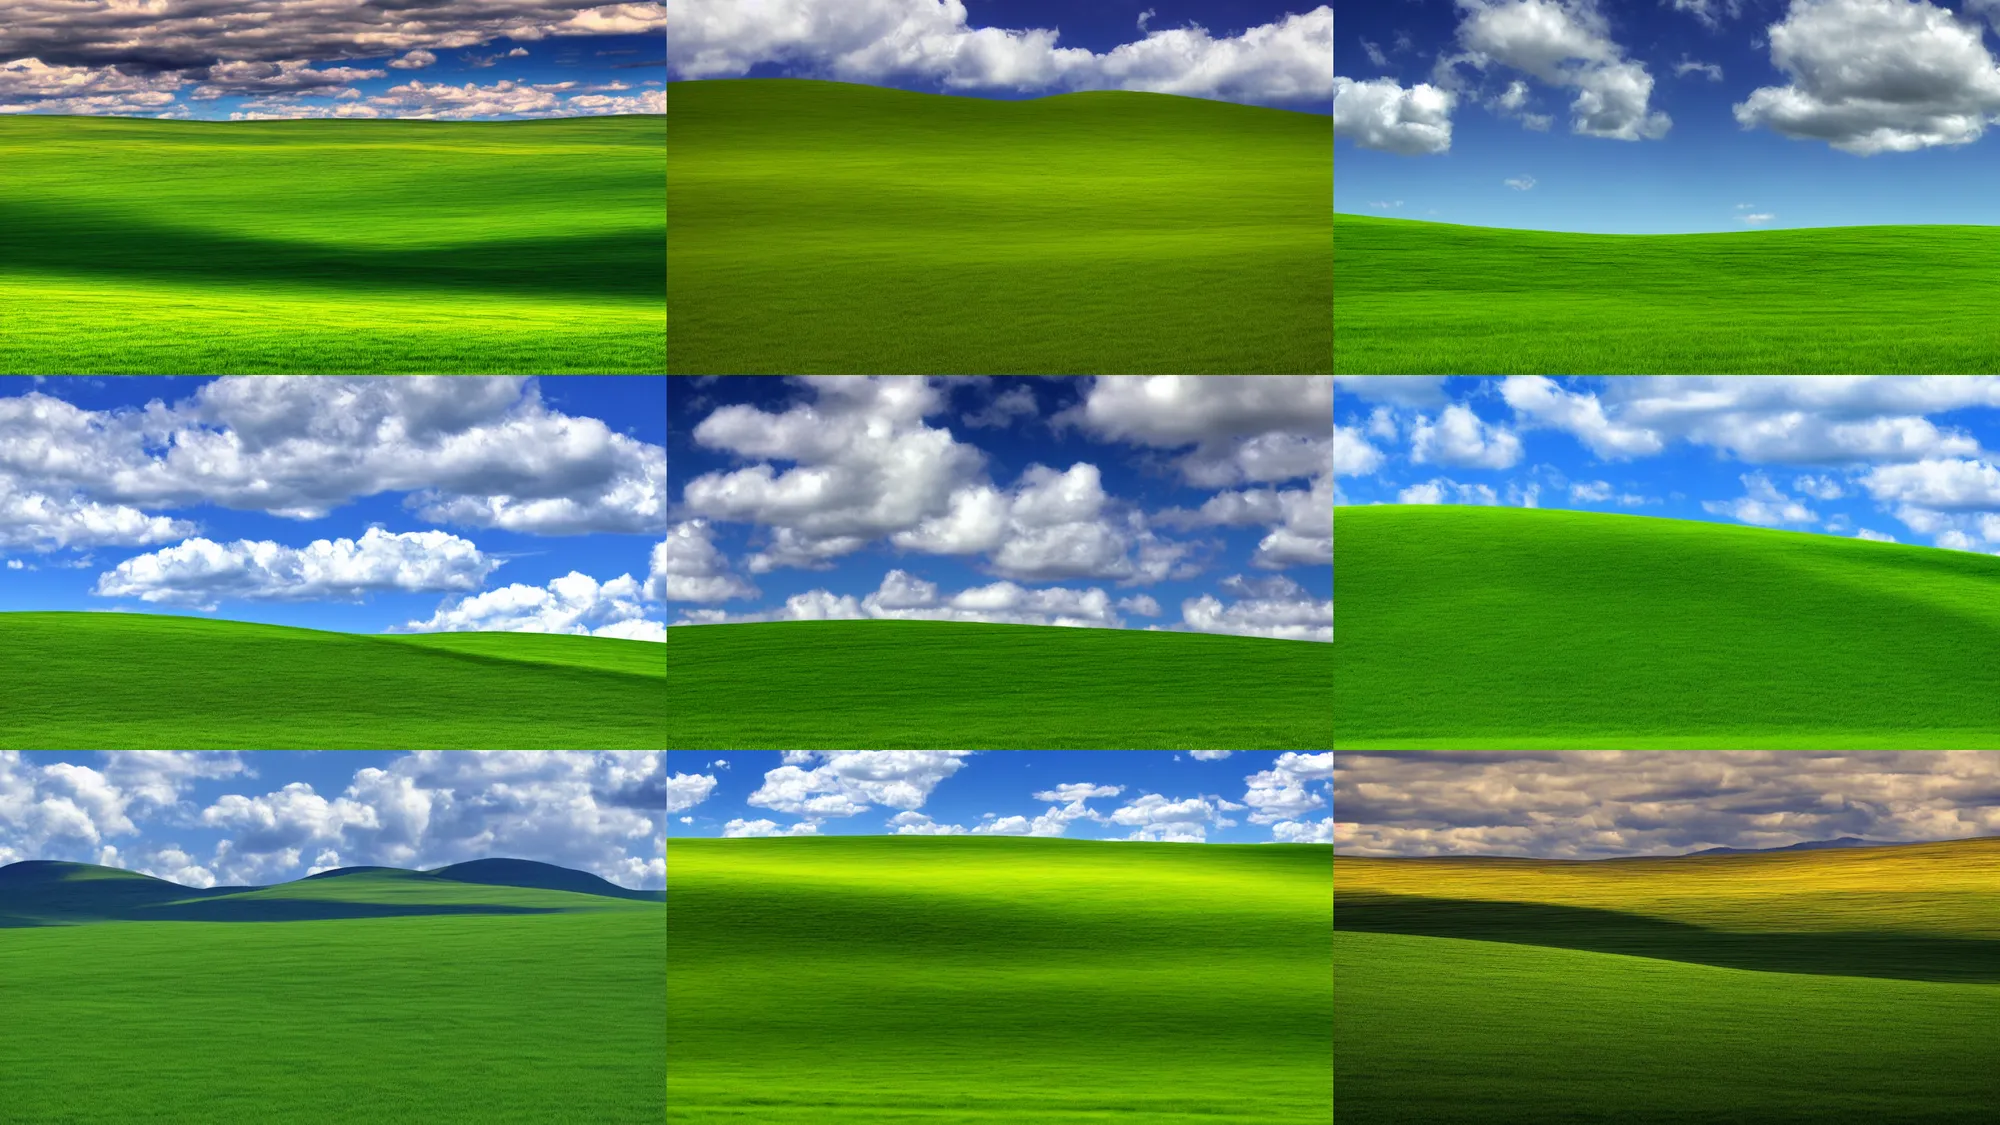 windows xp default desktop background image | Stable Diffusion | OpenArt